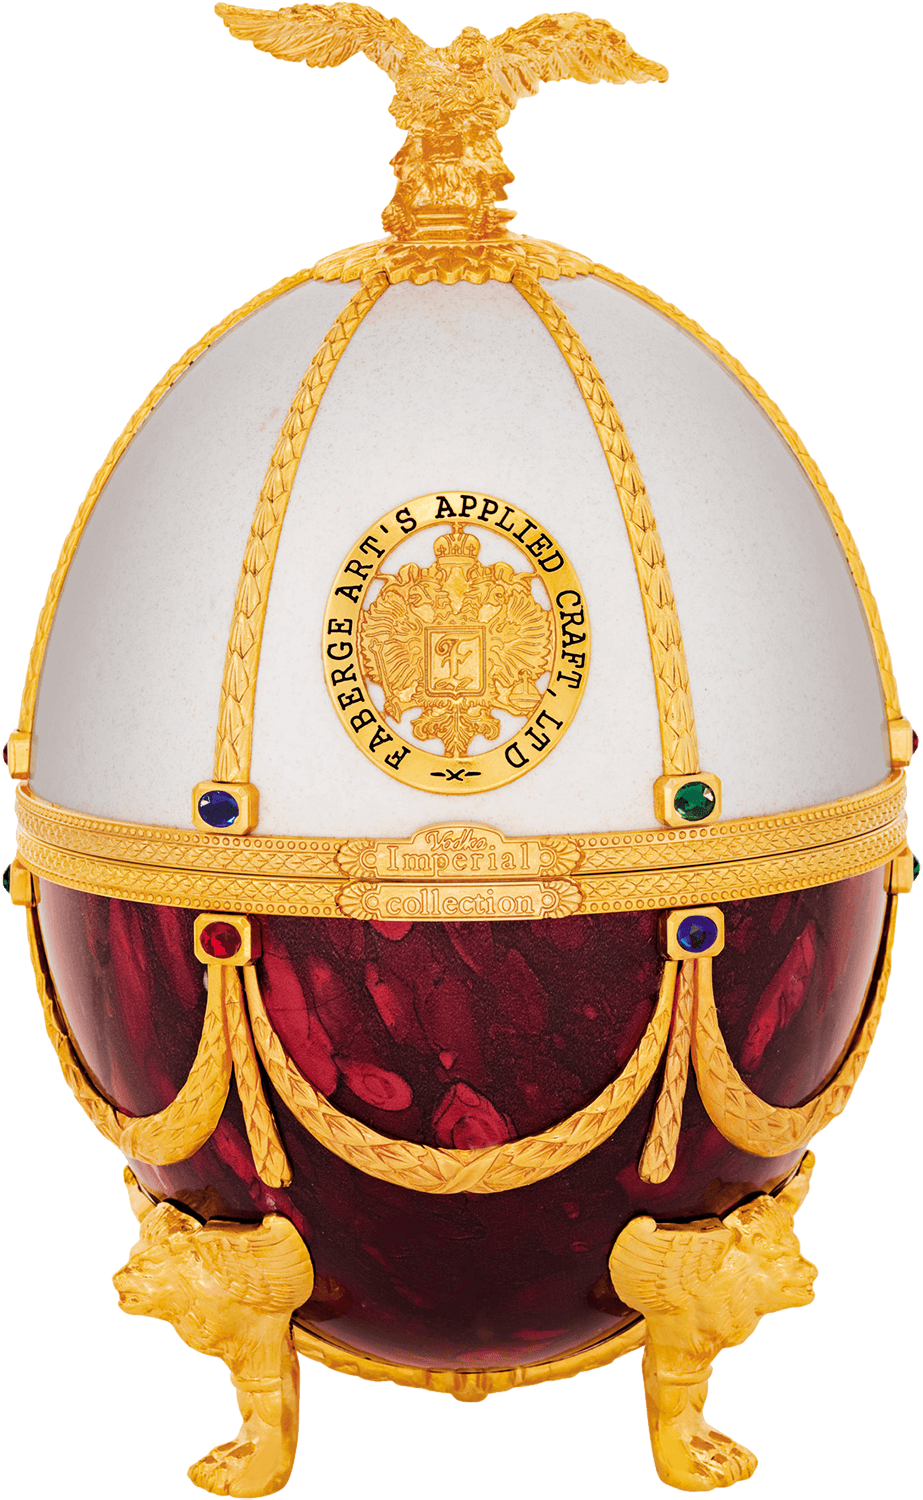 Императорская Коллекция графин-яйцо жемчуг-рубин в подарочной упаковке 0.7 л